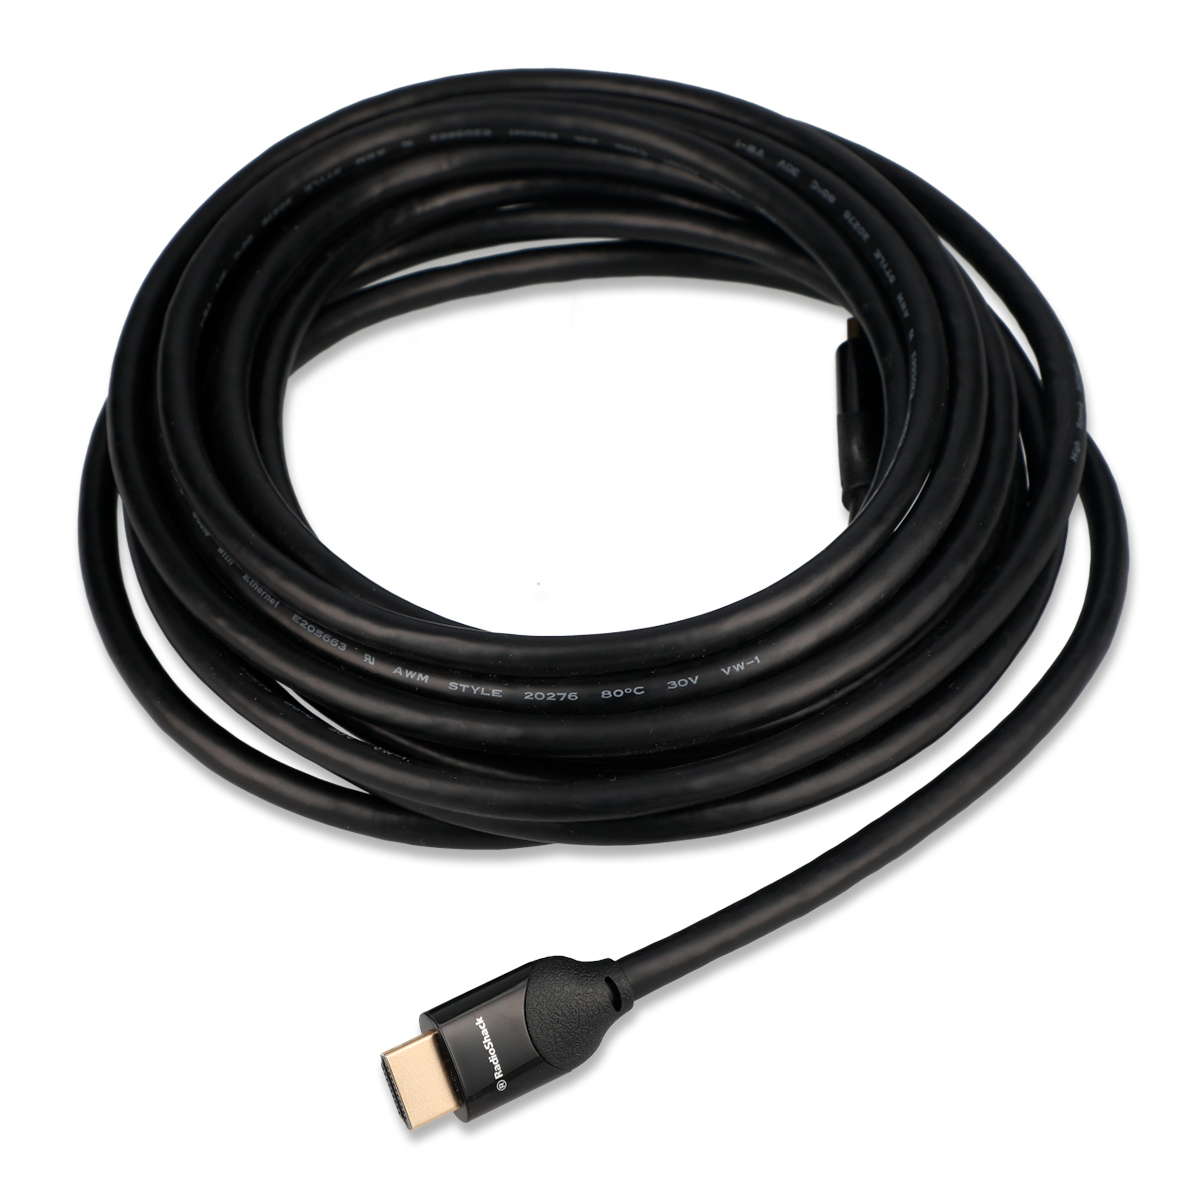 Cable HDMI con Ethernet RadioShack / 6.06 m / Plástico / Negro con oro, Cables  HDMI, Cables de audio y video, Audio y video, Todas, Categoría